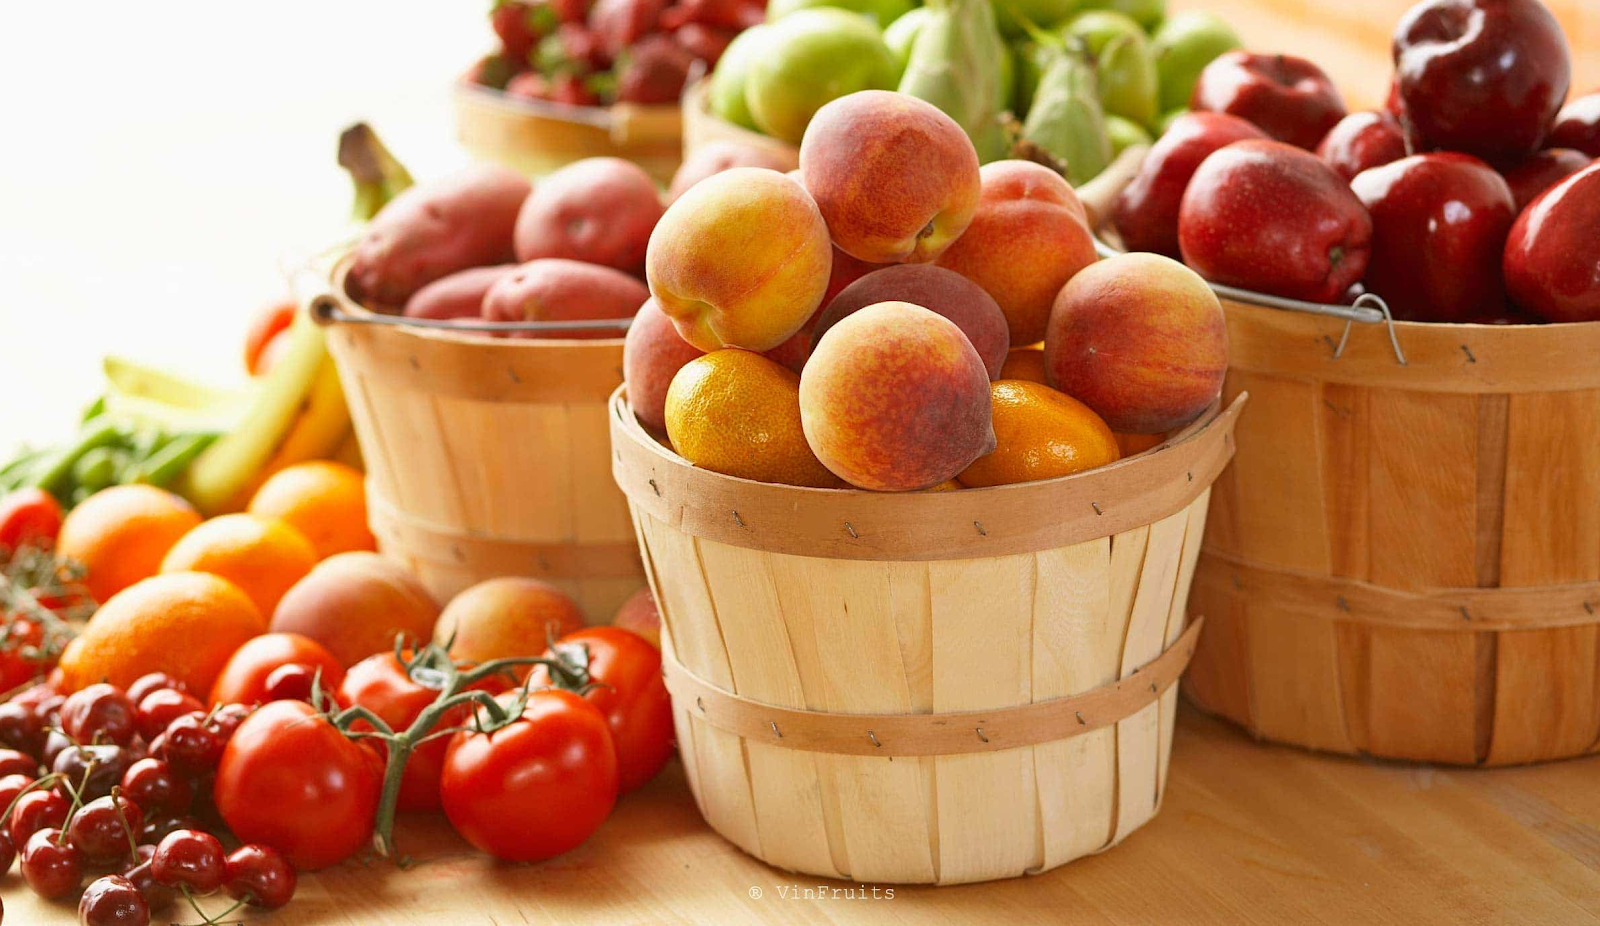 Đơn vị cung cấp trái cây nhập khẩu uy tín và chuyên nghiệp nhất tại TPHCM